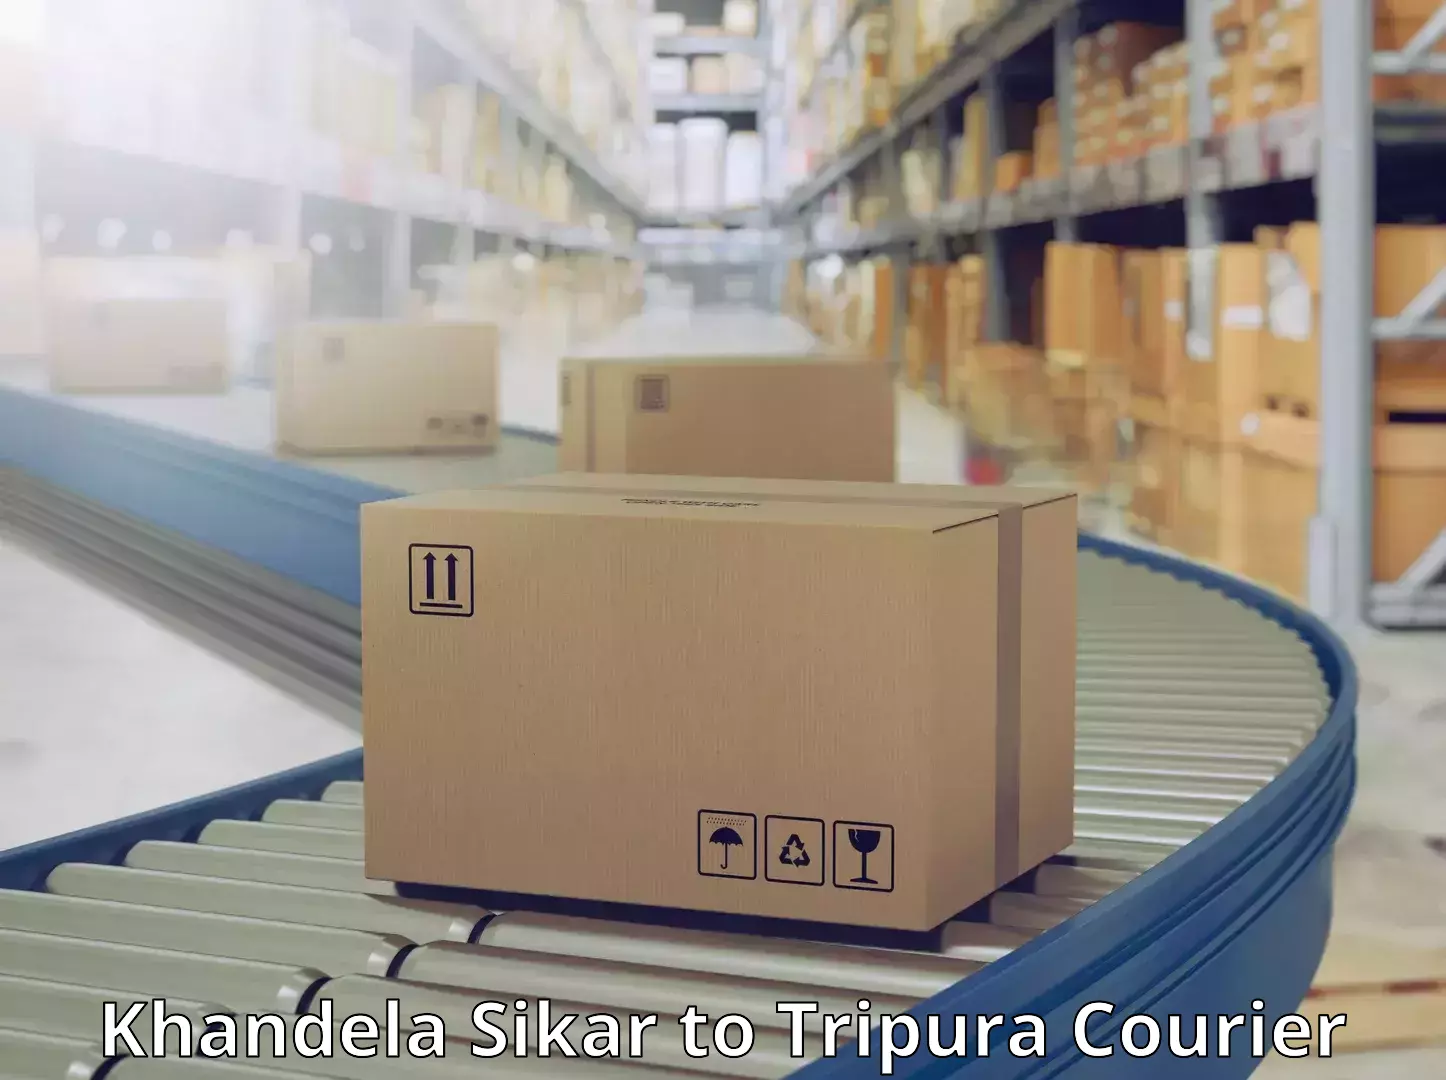 User-friendly courier app Khandela Sikar to Tripura